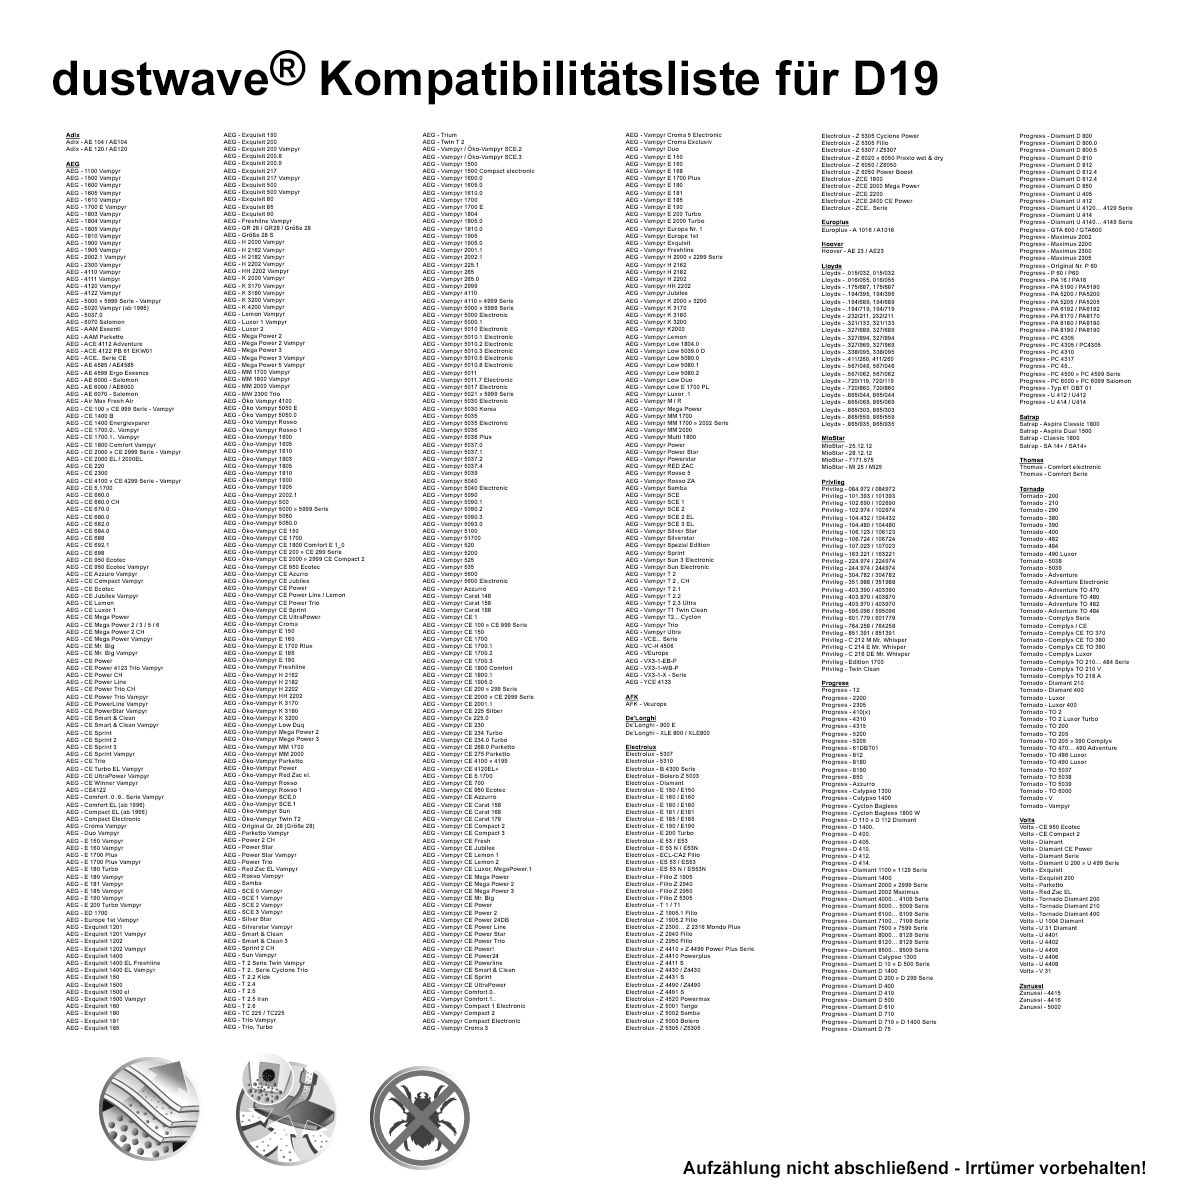 Dustwave® 20 Staubsaugerbeutel für AEG Vampyr MM 1700 / 1800 / 2000 - hocheffizient, mehrlagiges Mikrovlies mit Hygieneverschluss - Made in Germany